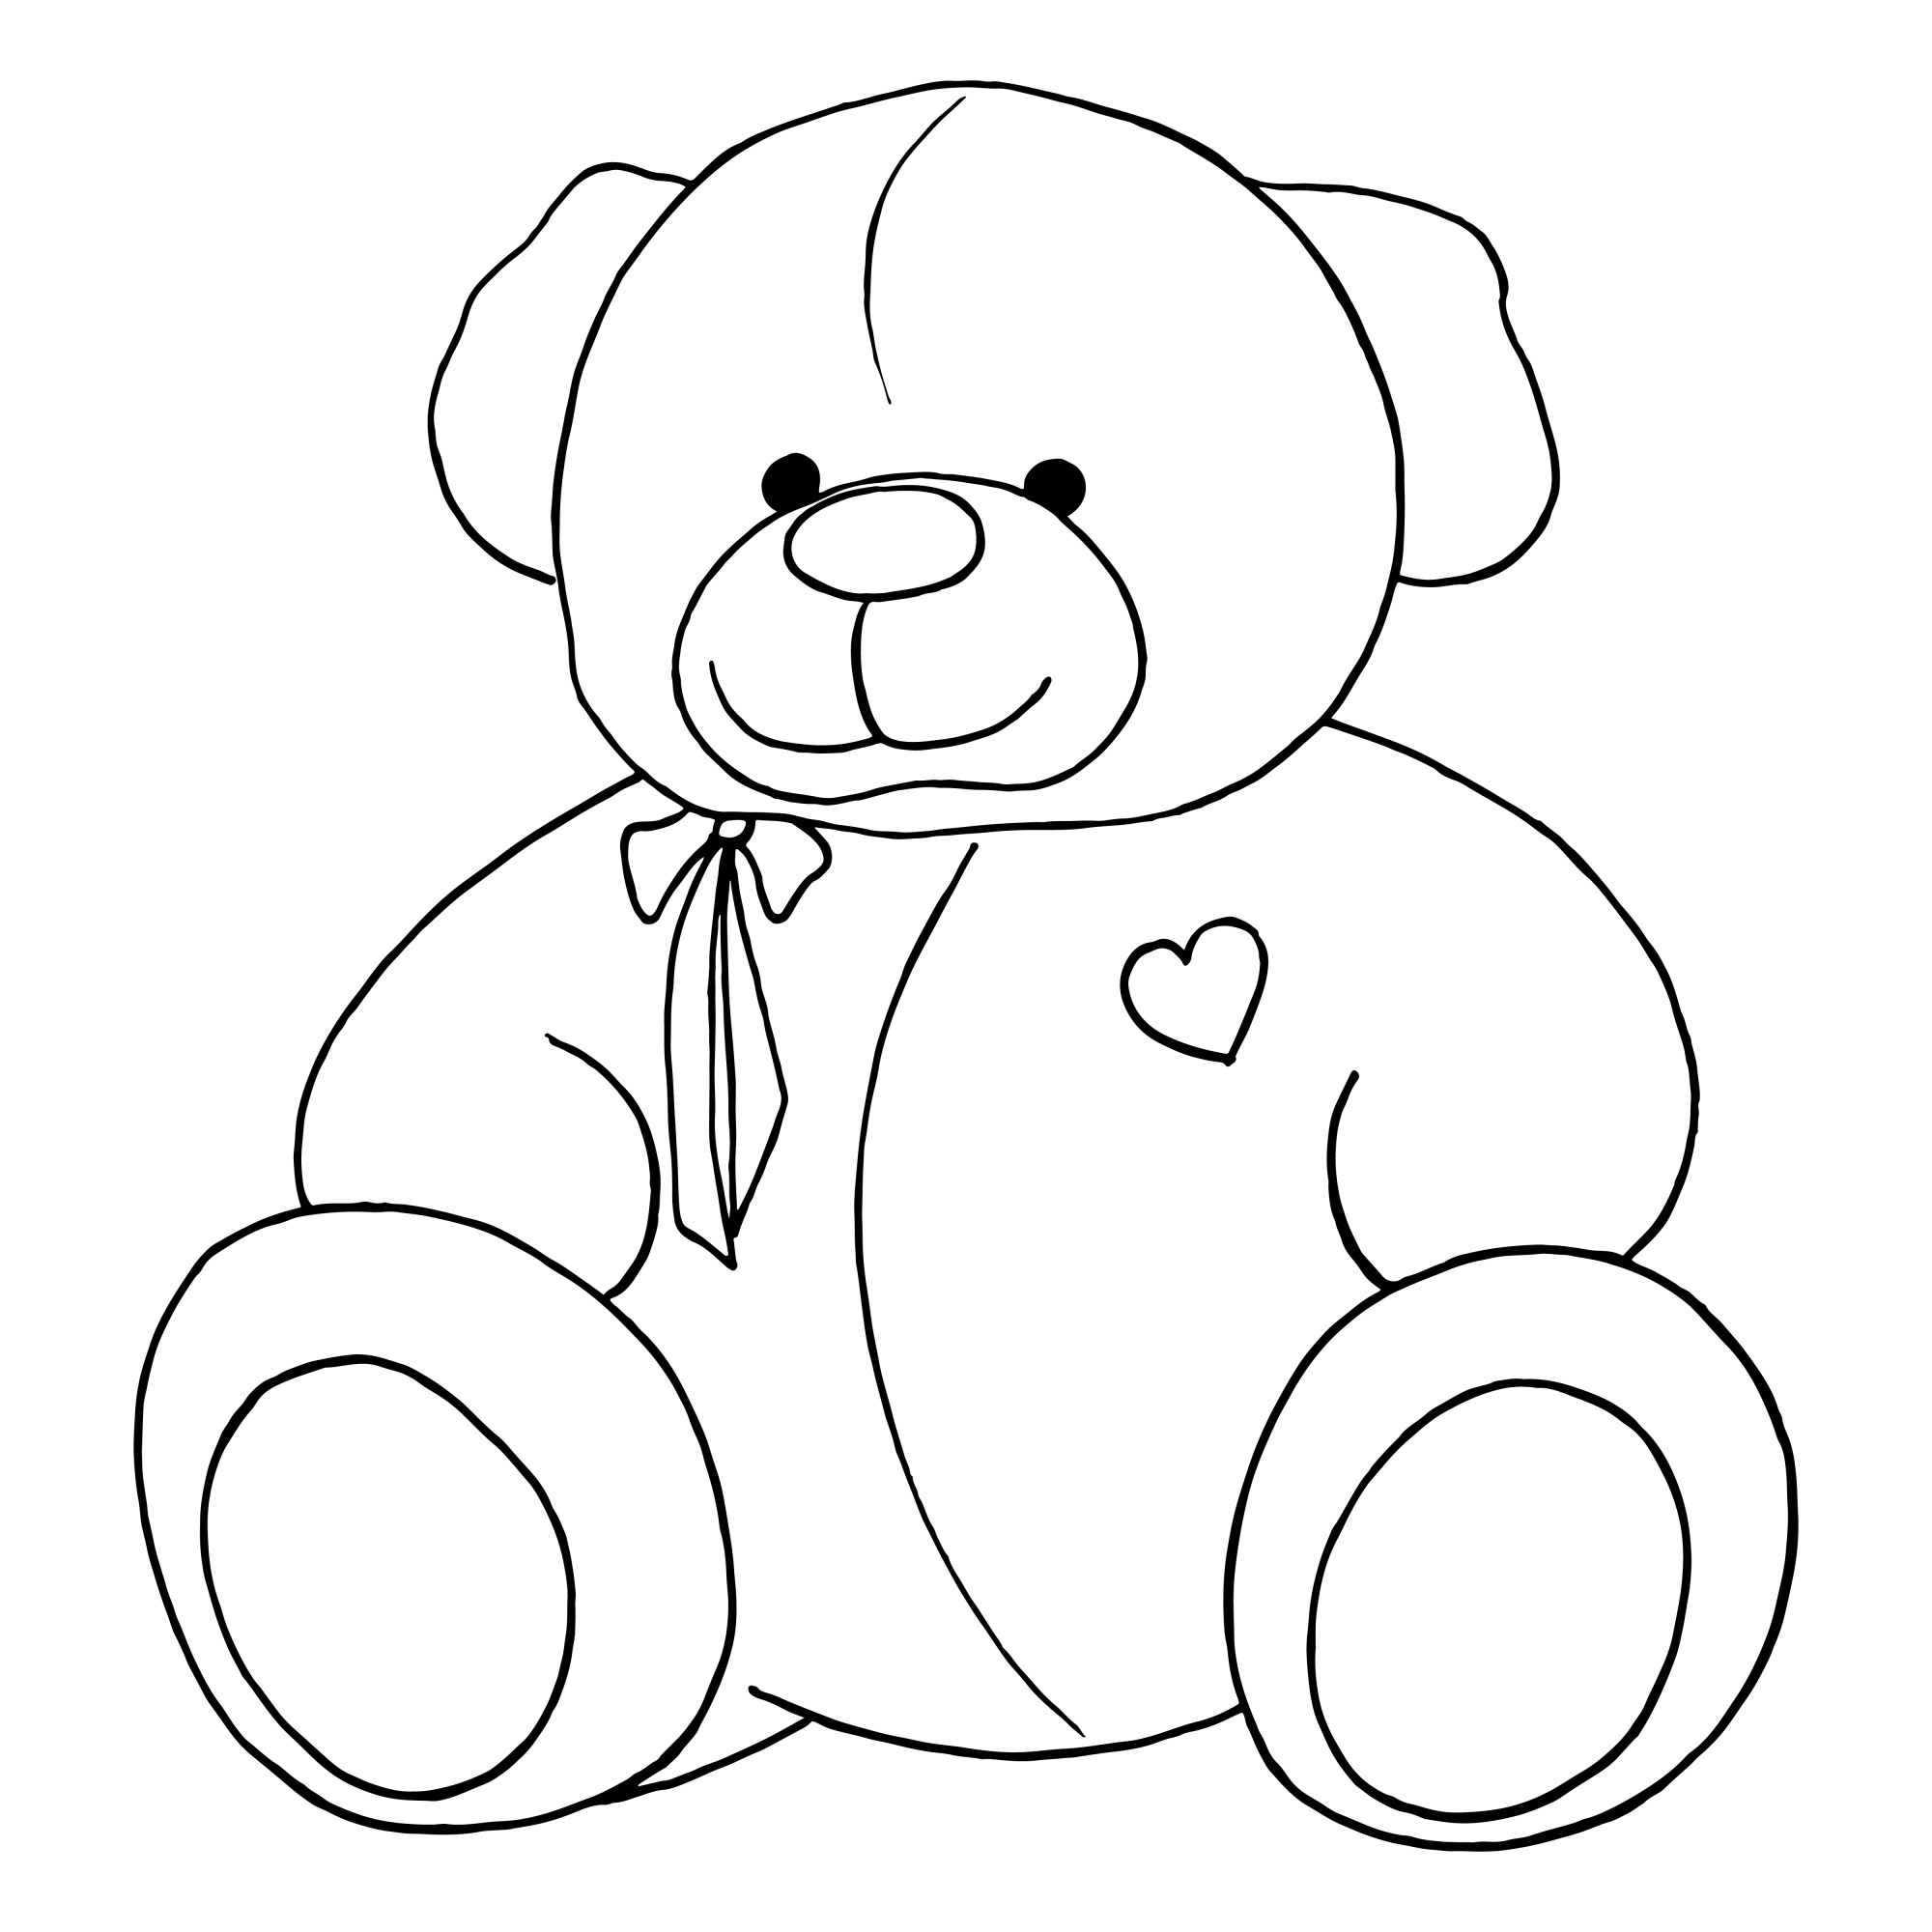 Раскраска для детей: игрушка плюшевый медведь